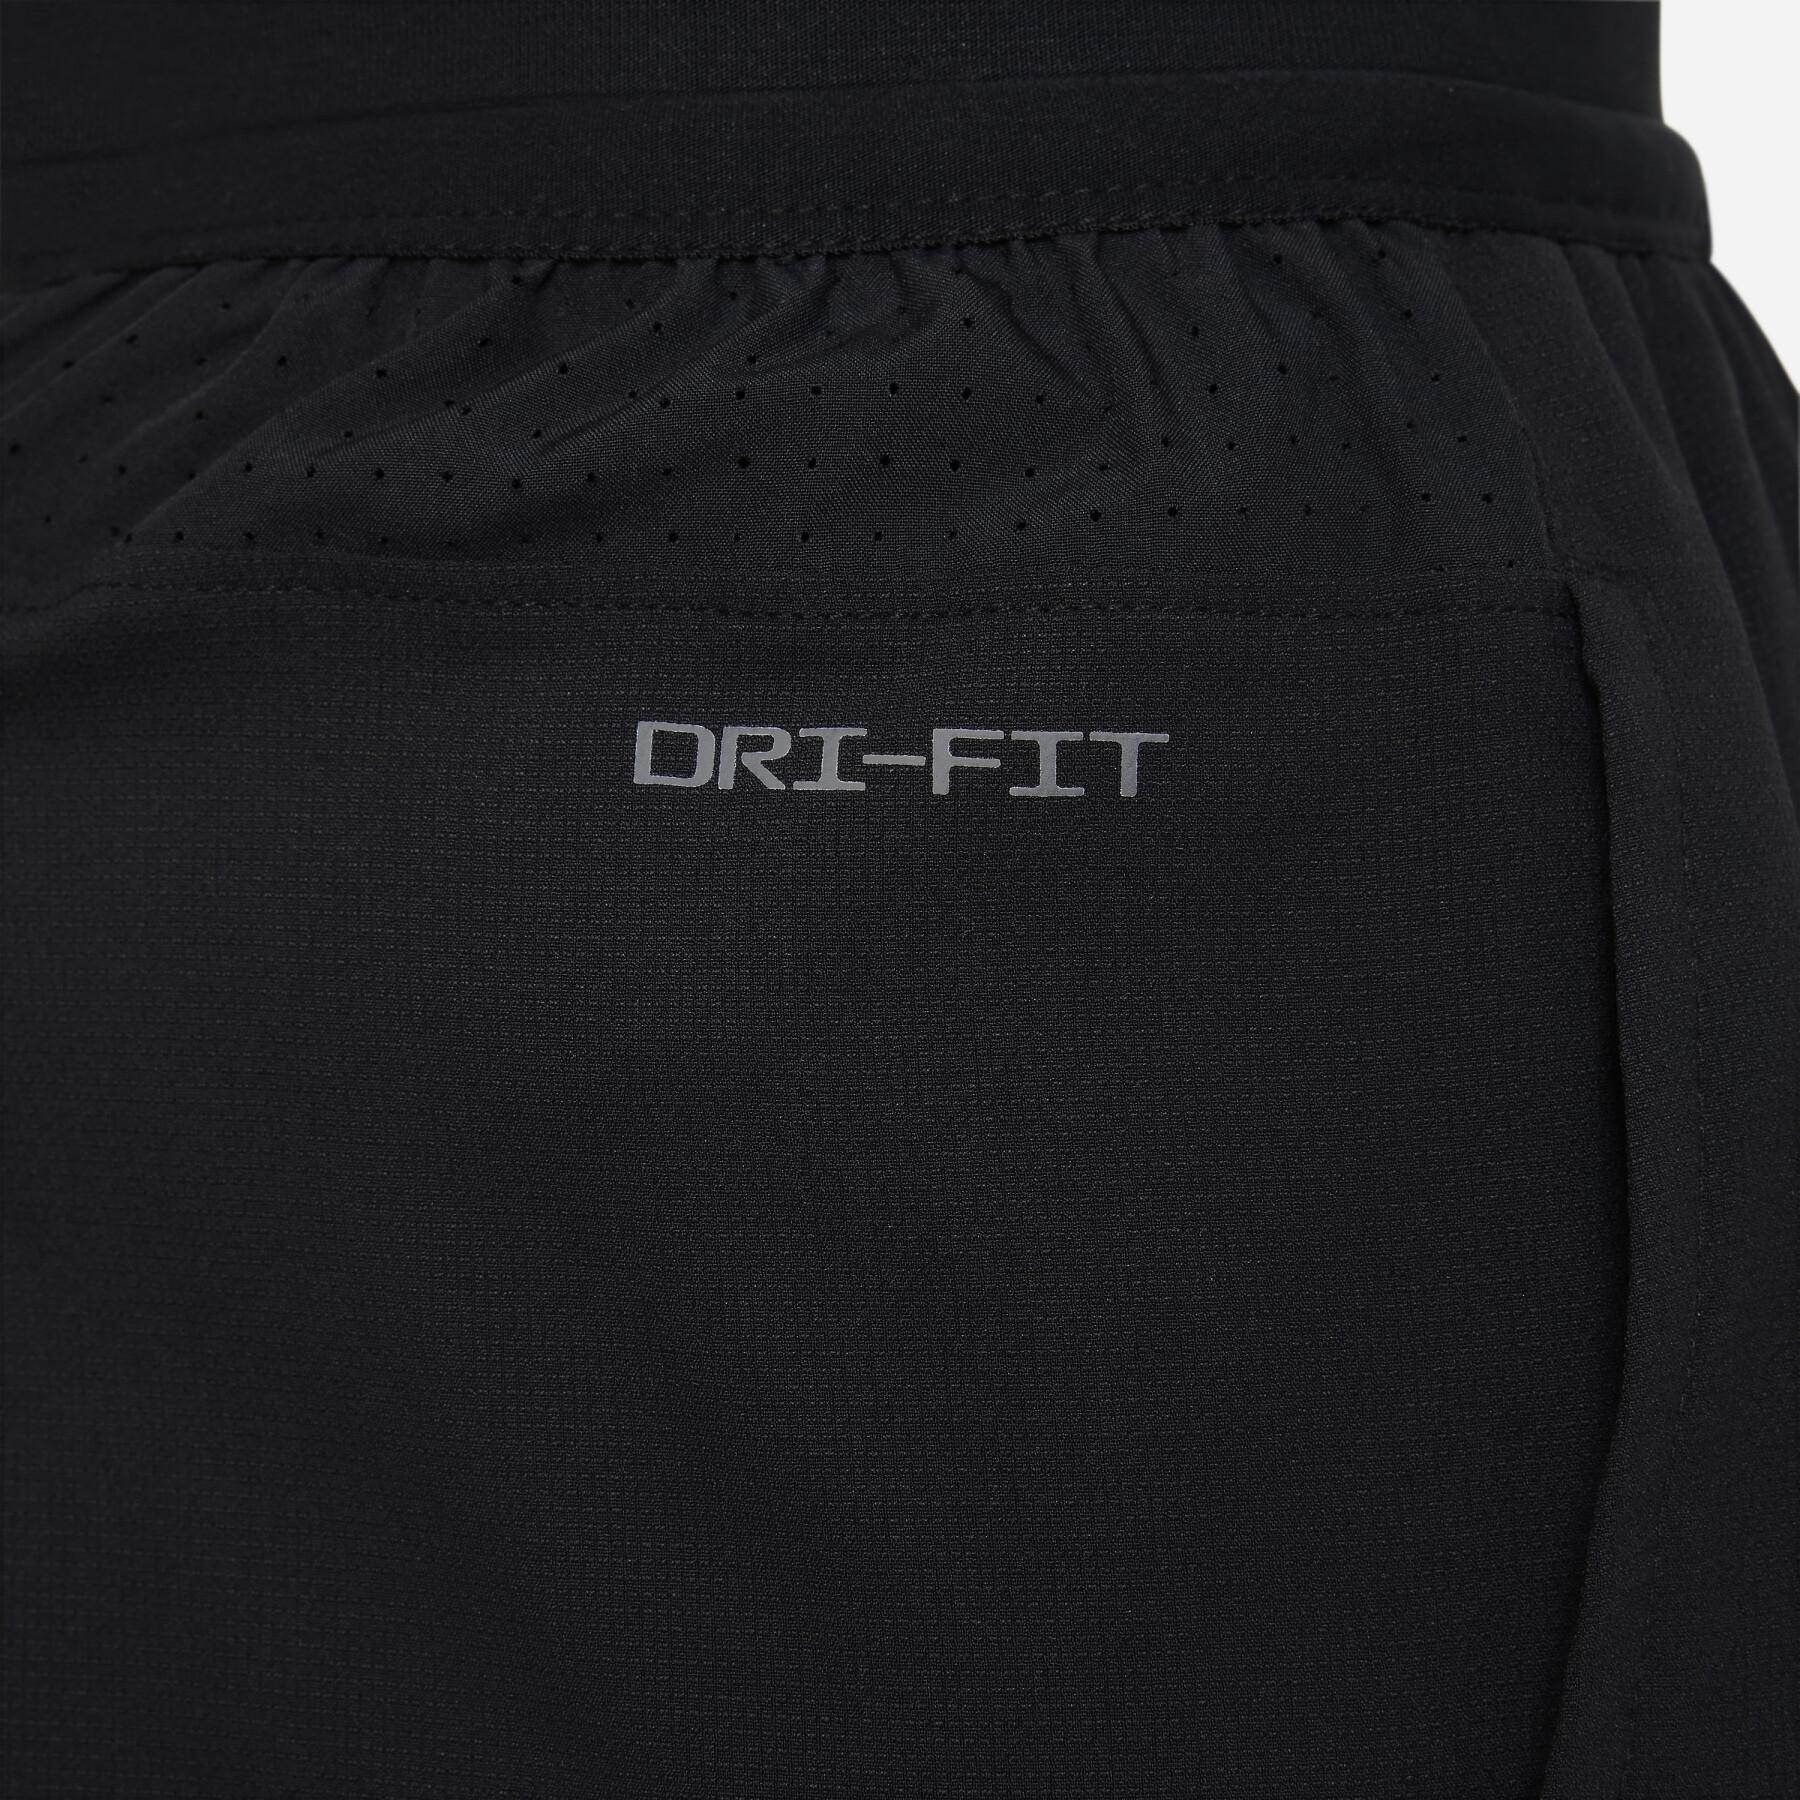 Shorts für Kinder Nike Dri-FIT Multi Tech